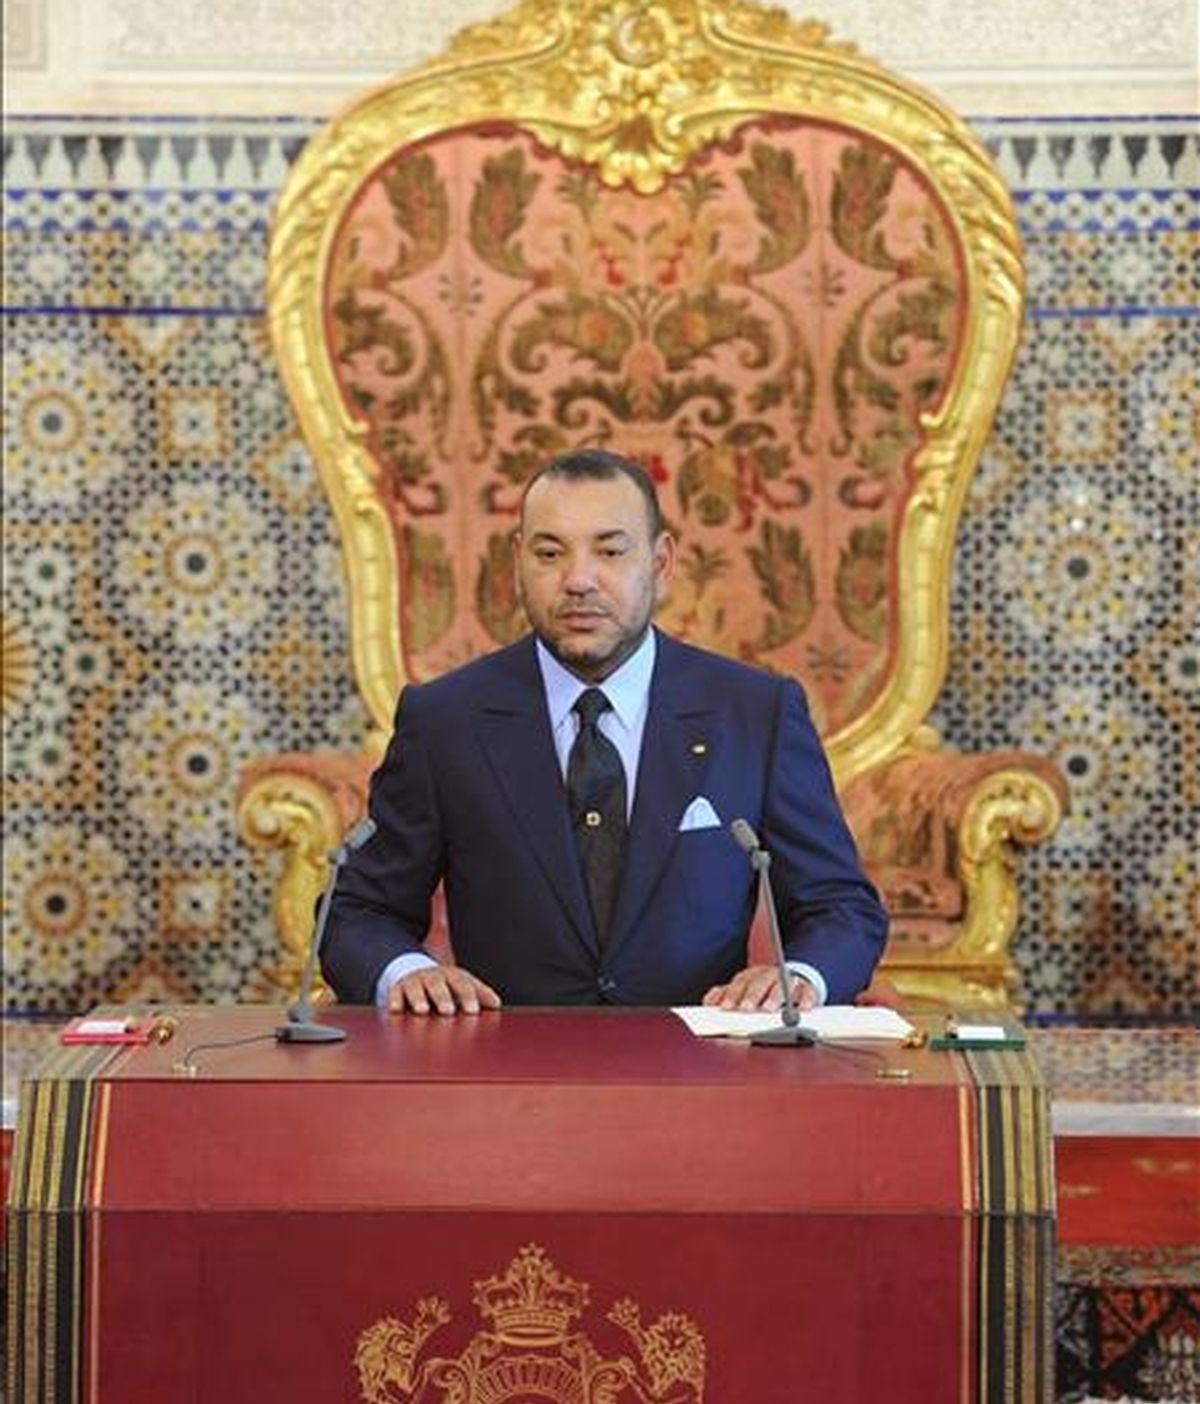 El rey Mohamed VI de Marruecos (en la imagen) ha nombrado hoy al saharaui Ahmedu Uld Suilem como nuevo embajador de su país en España, según ha anunciado la agencia oficial marroquí MAP. EFE/Archivo